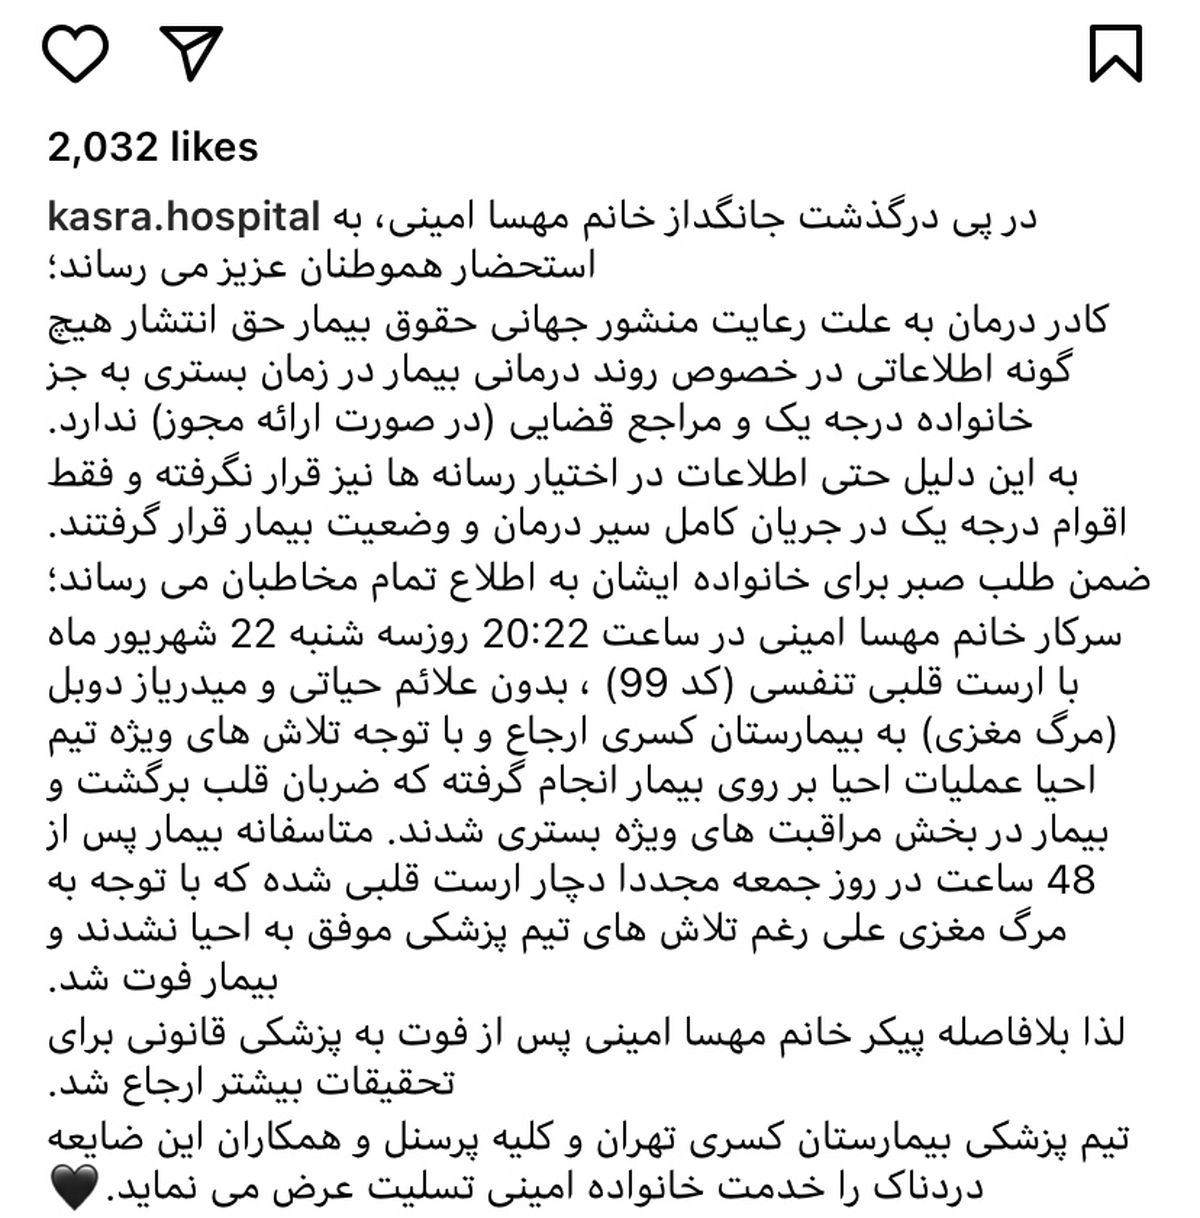 بیمارستان کسری در پی فوت مهسا امینی بیانیه صادر کرد/ عکس